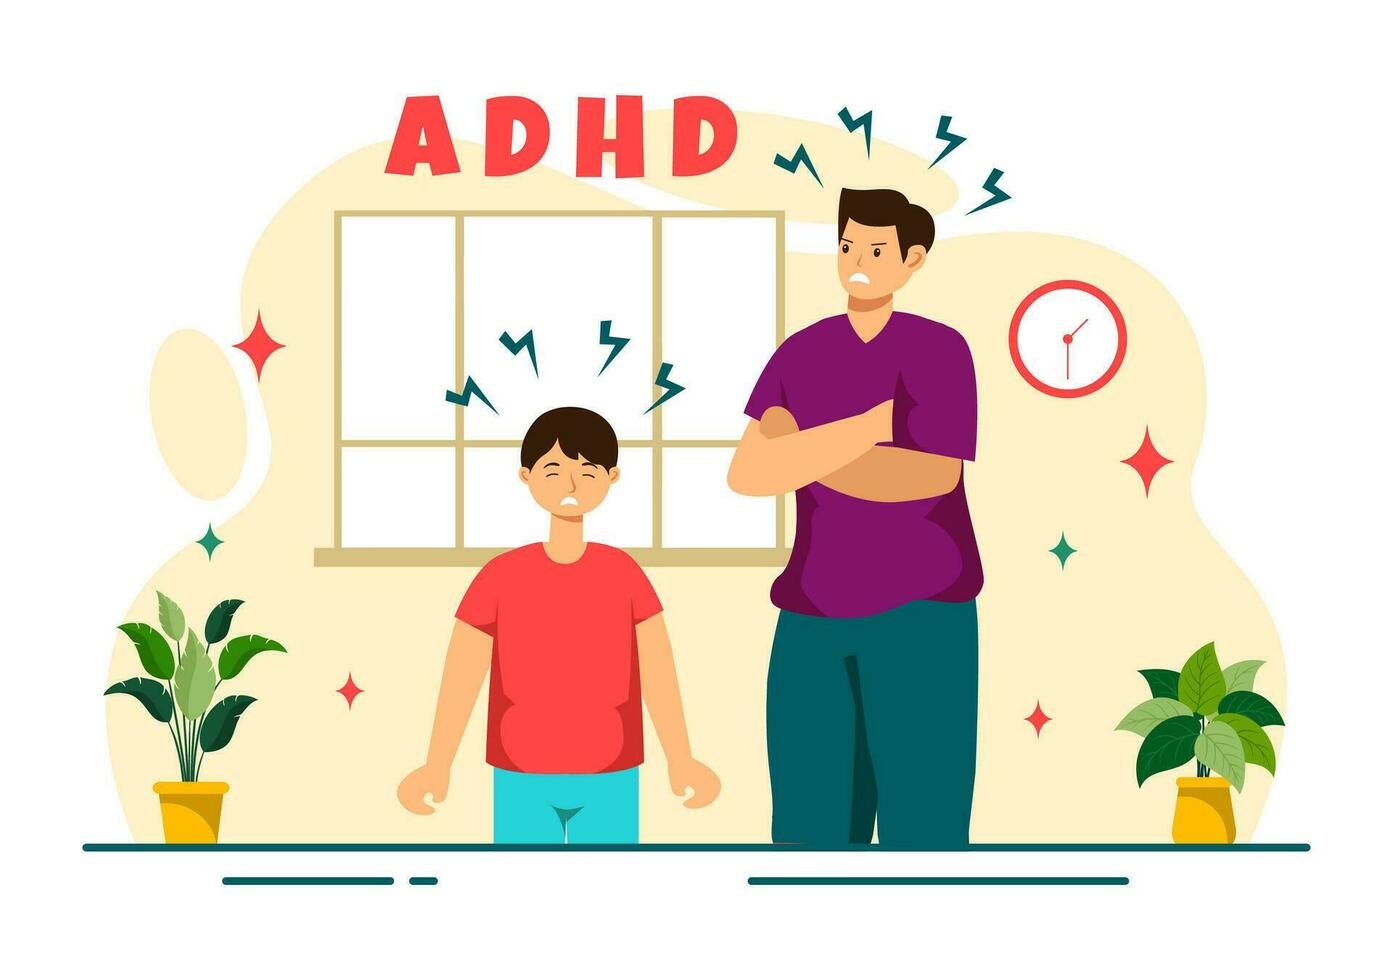 tdah o atención déficit hiperactividad trastorno vector ilustración con niños impulsivo y hiperactivo comportamiento en mental salud y psicología